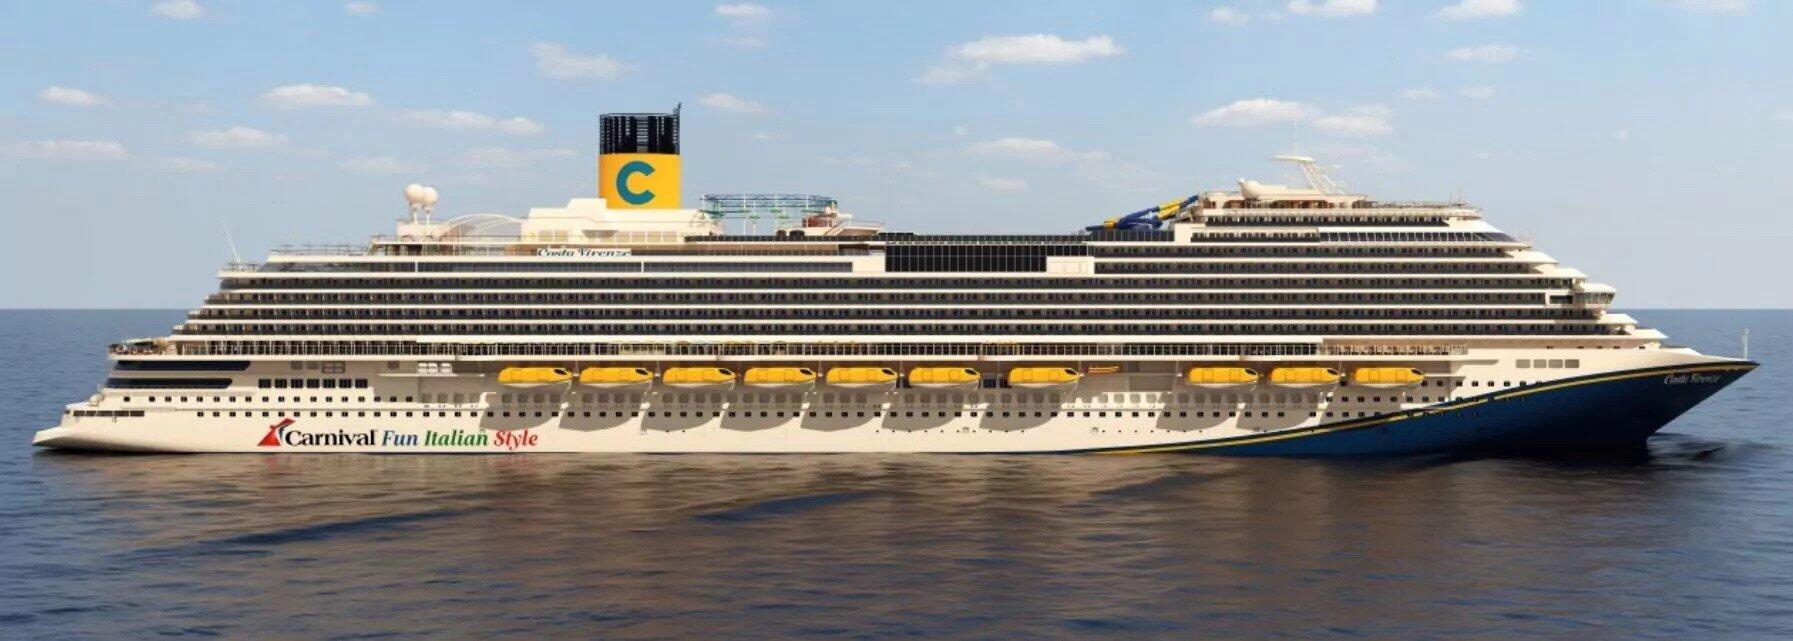 Carnival Firenze cruise ship (Photo/Carnival Cruise Line)